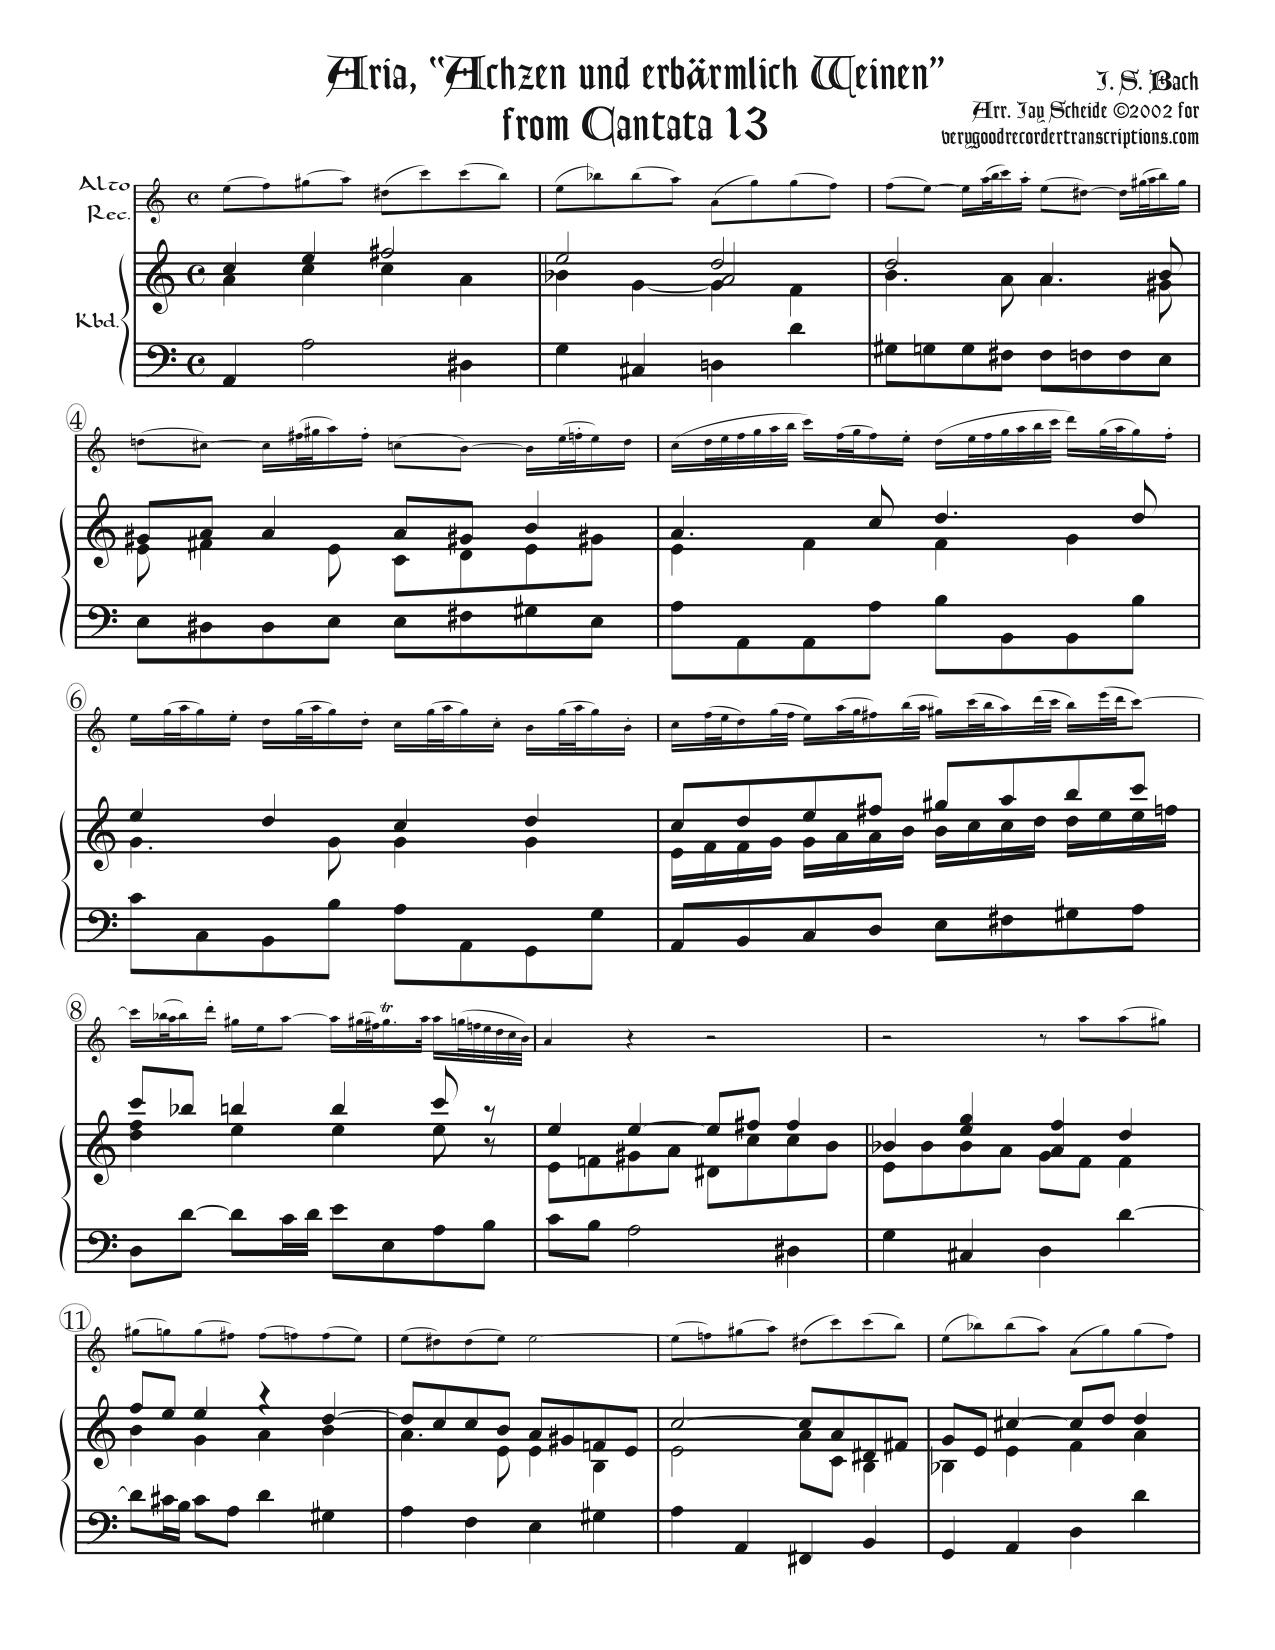 Aria, “Achzen und erbärmlich Weinen,” from Cantata 13, two versions